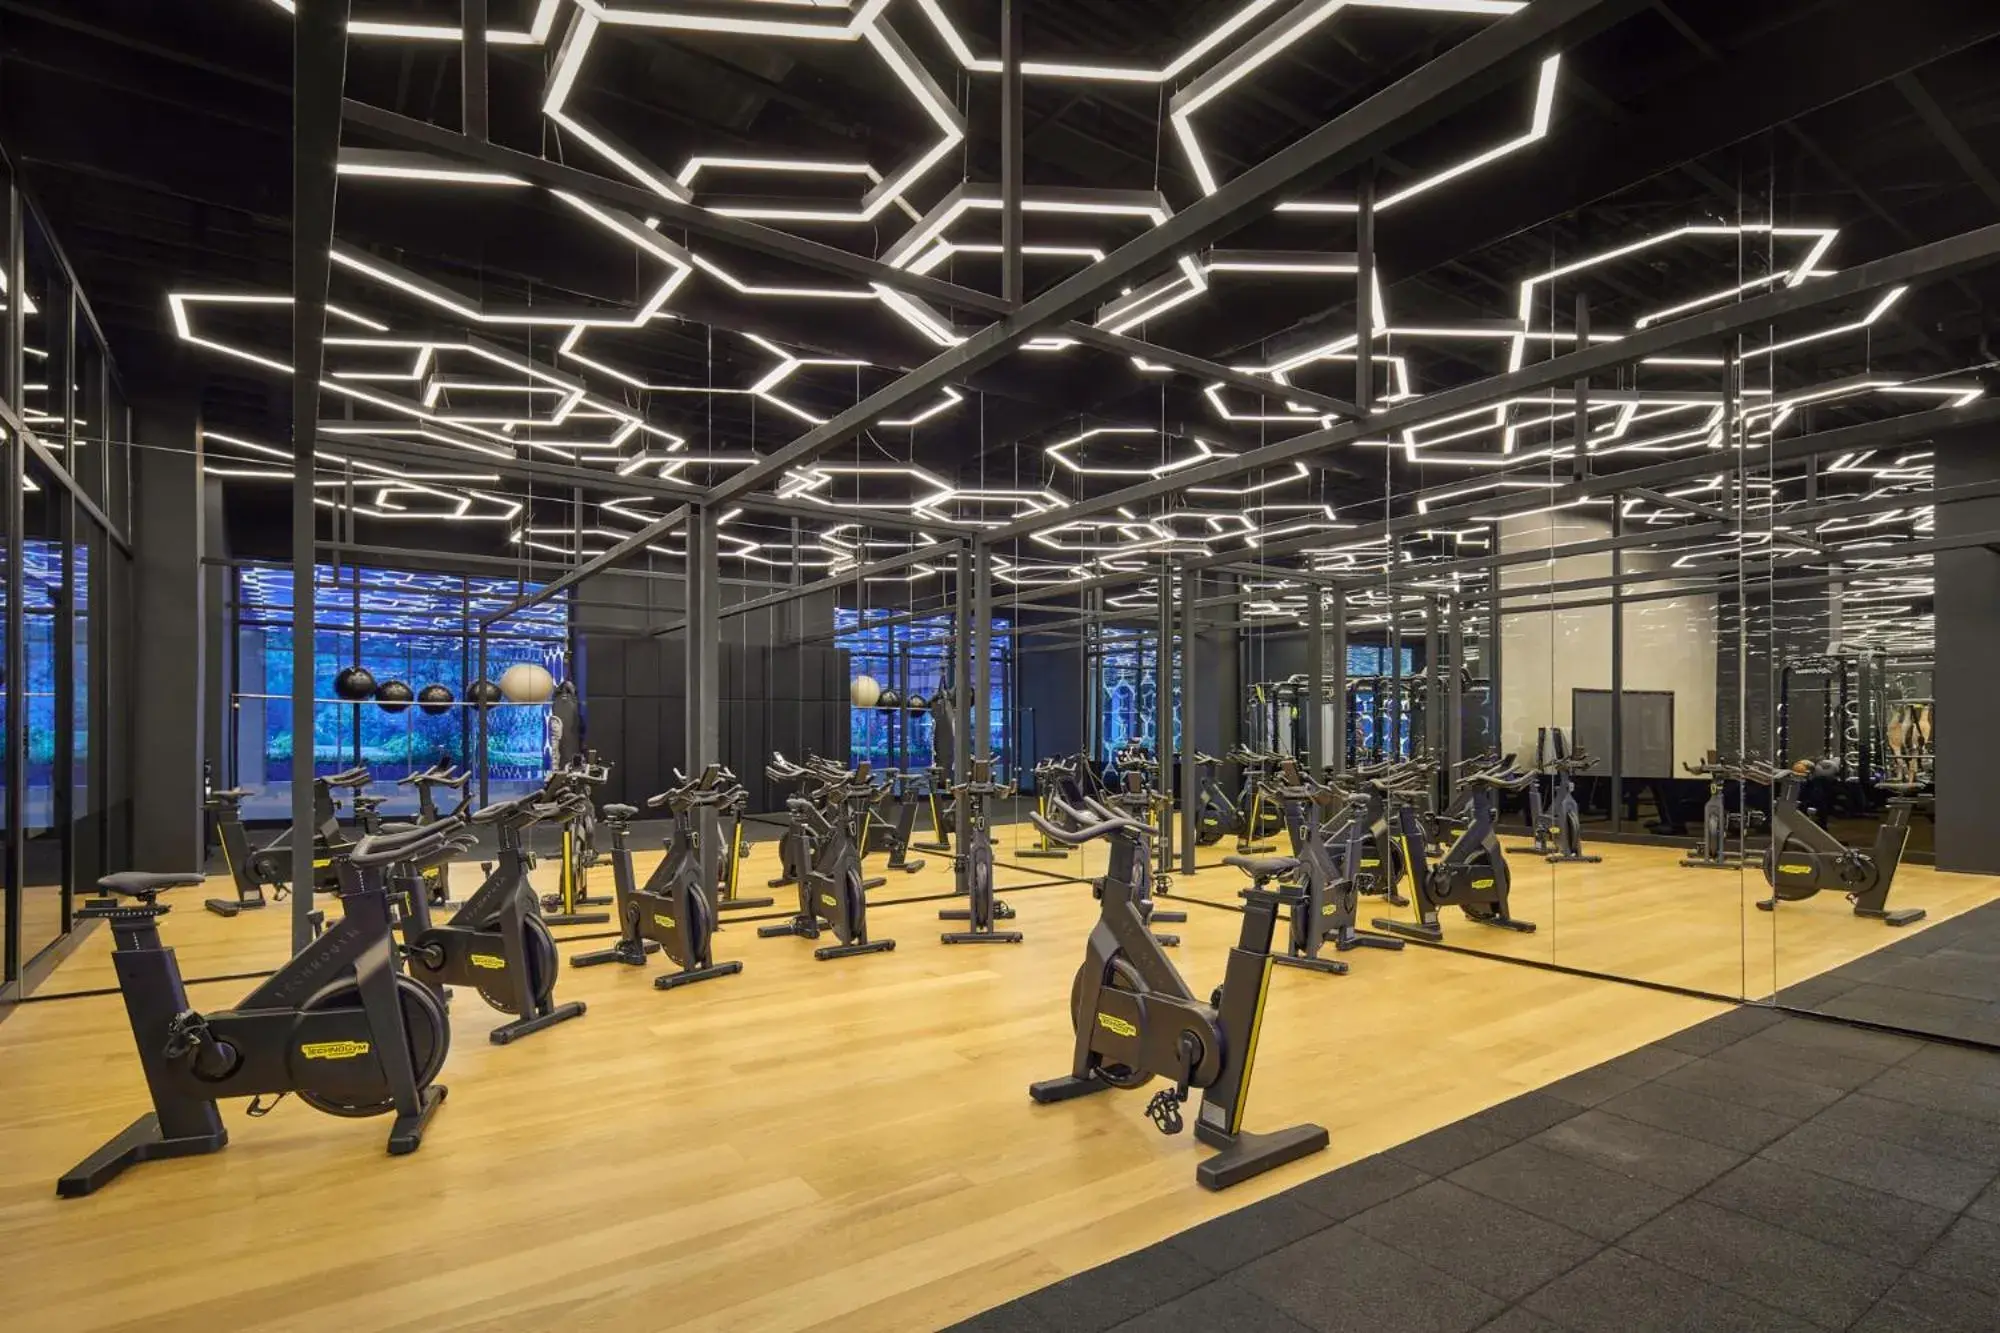 Fitness centre/facilities, Fitness Center/Facilities in Maxx Royal Kemer Resort